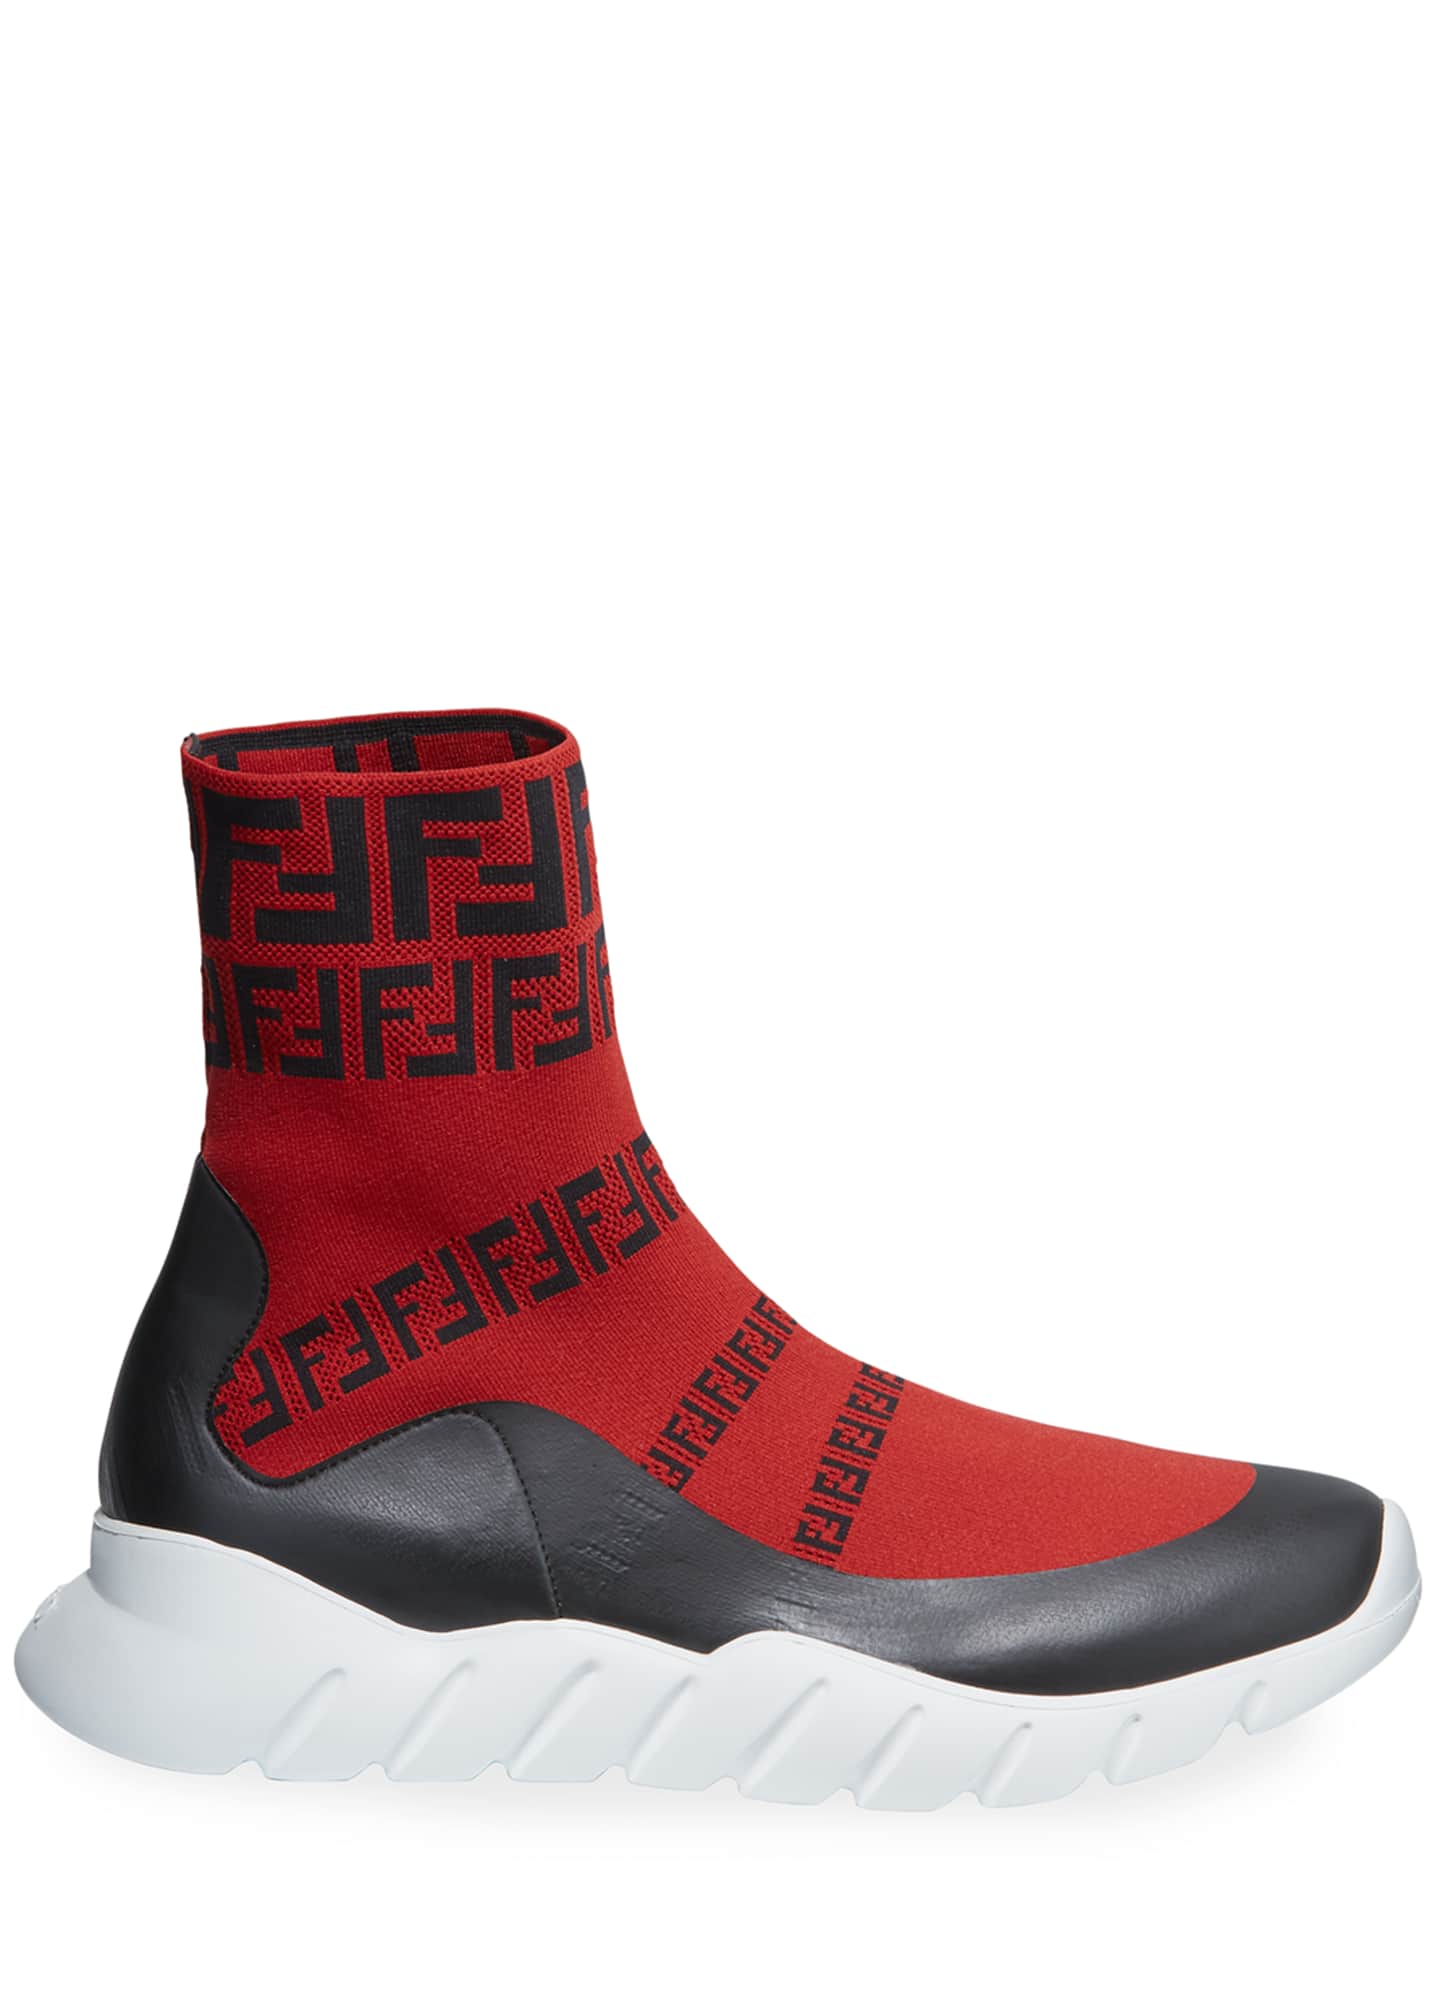 Fendi Men's FF Print Sock Boot Sneakers, Red - Bergdorf Goodman